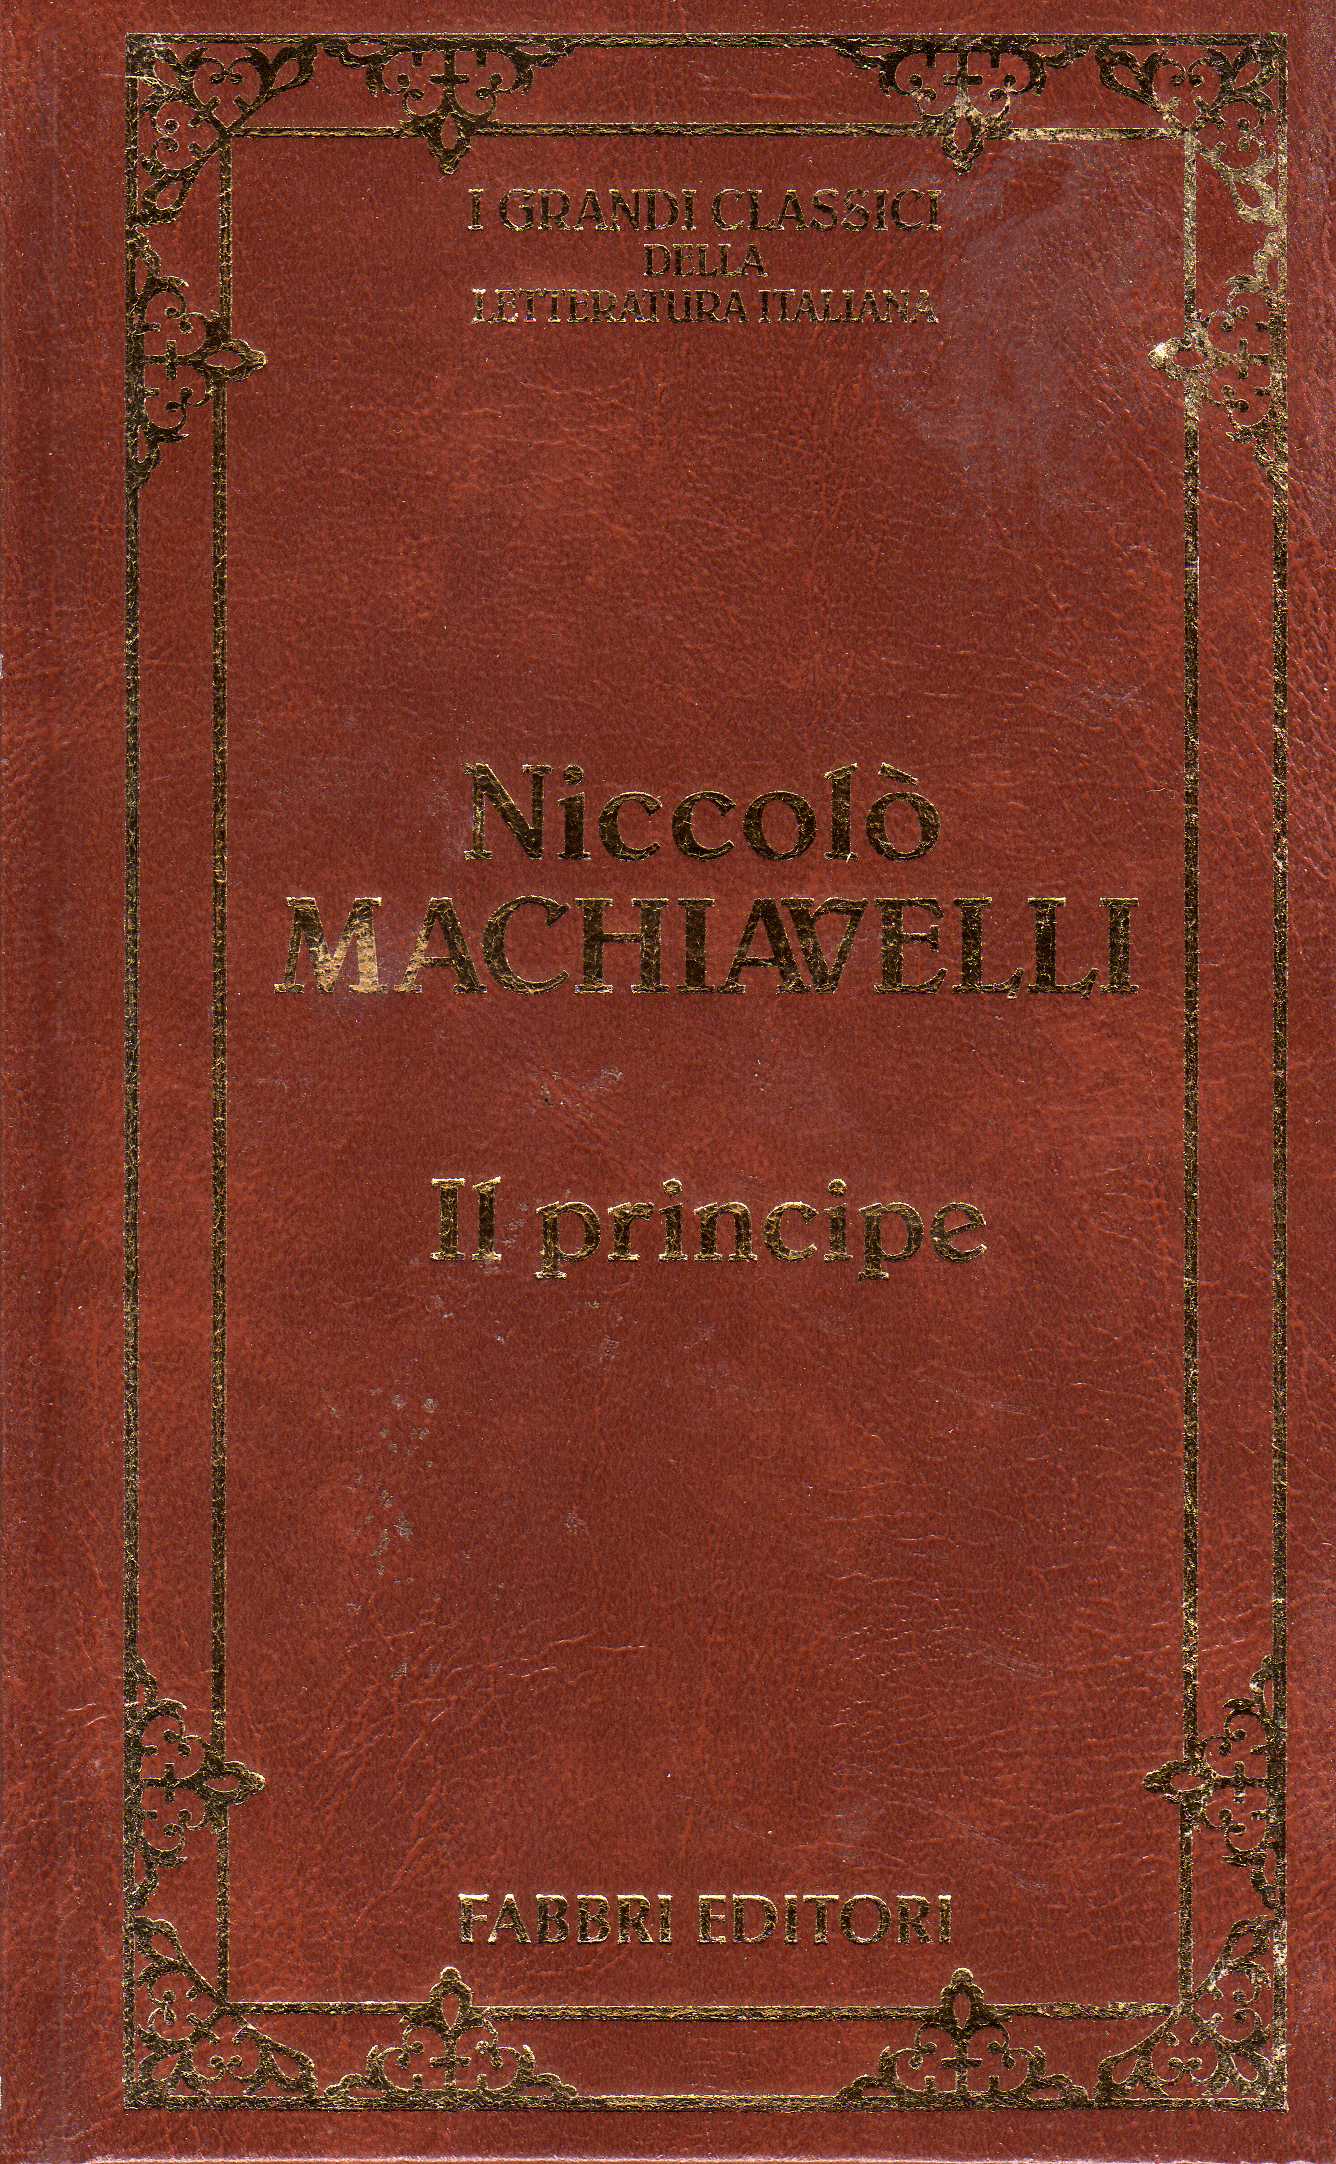 9 Citazioni E Frasi Dal Libro Il Principe Di Niccolo Machiavelli Anobii